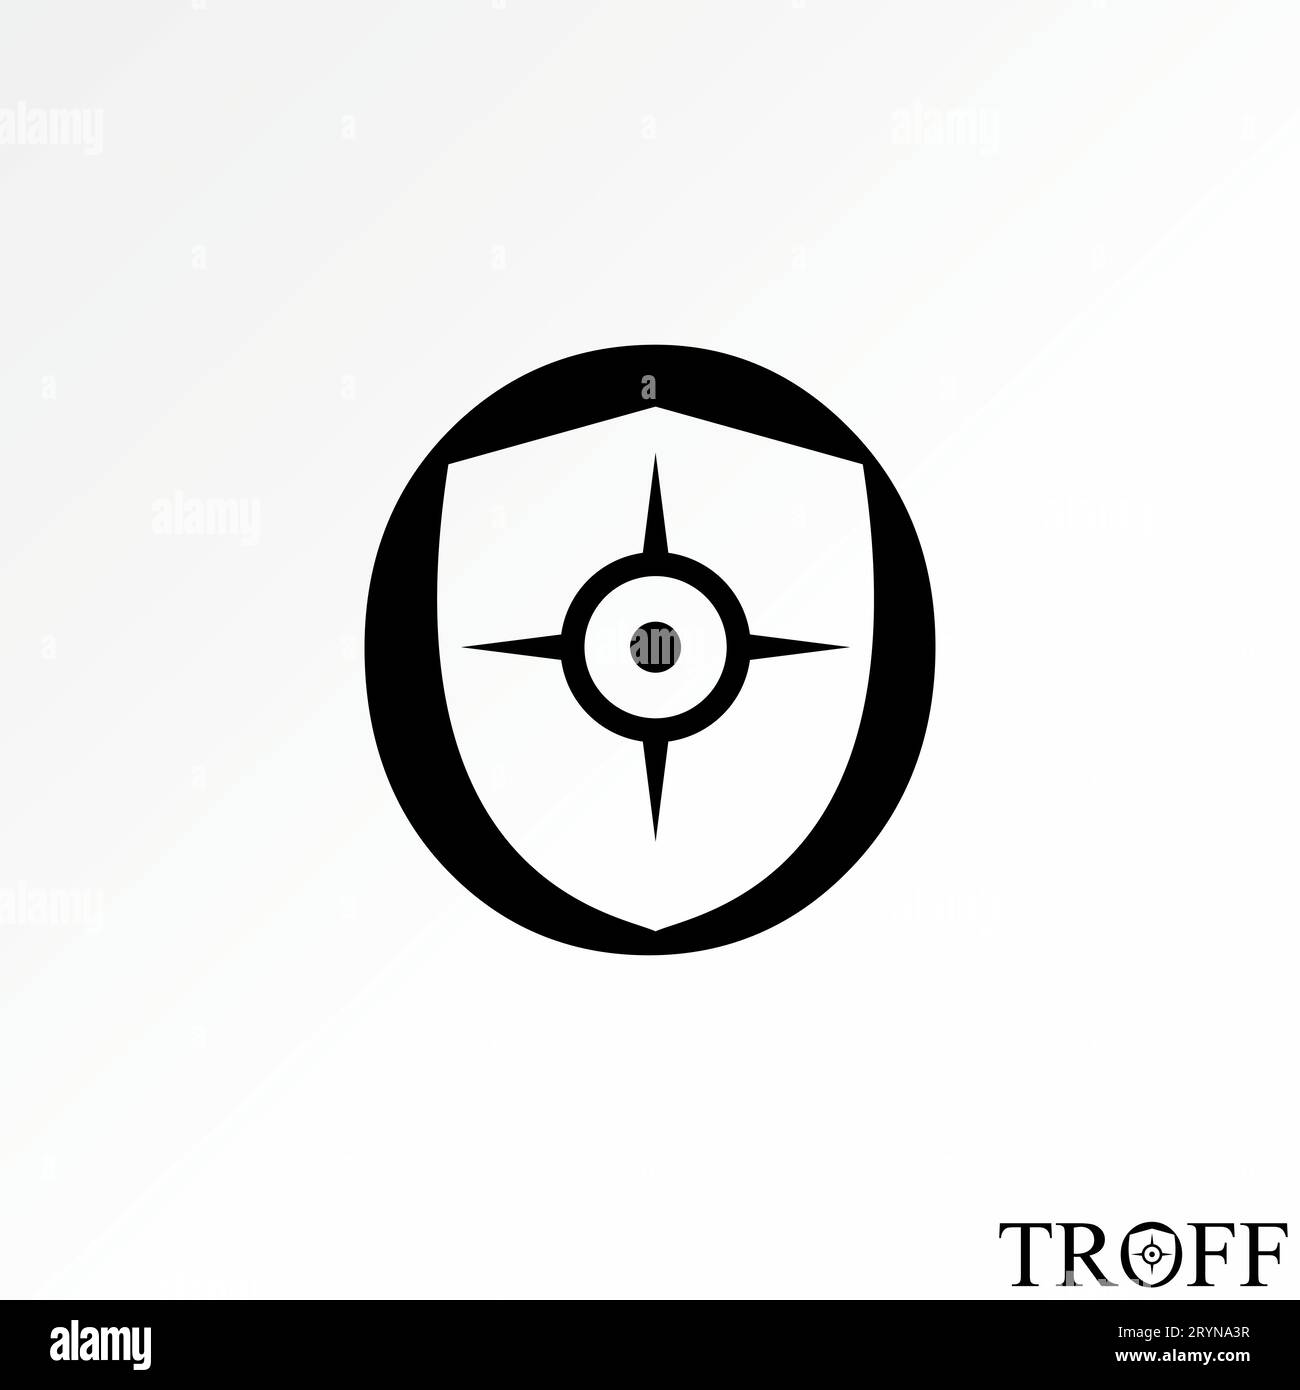 Logo Design Grafikkonzept kreatives abstraktes Premium-Vektorzeichen mit Schützenschutz mit Zielpfeil. Im Zusammenhang mit militärischem Sicherheitsschutz Stock Vektor